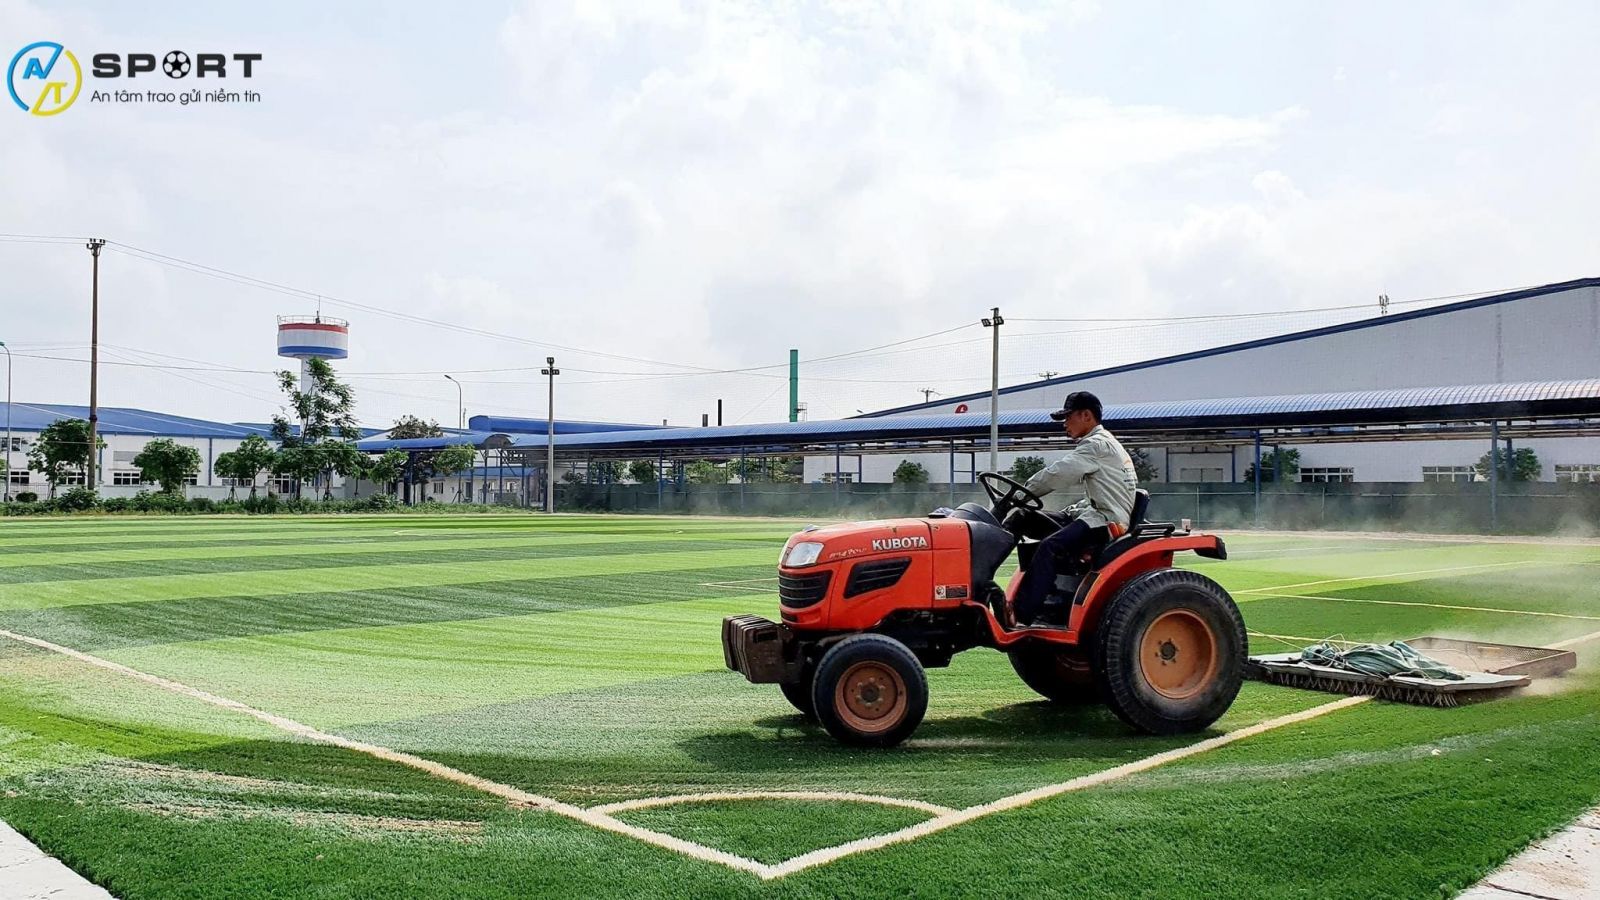 Thi công cỏ nhân tạo sân bóng tại Hưng Yên